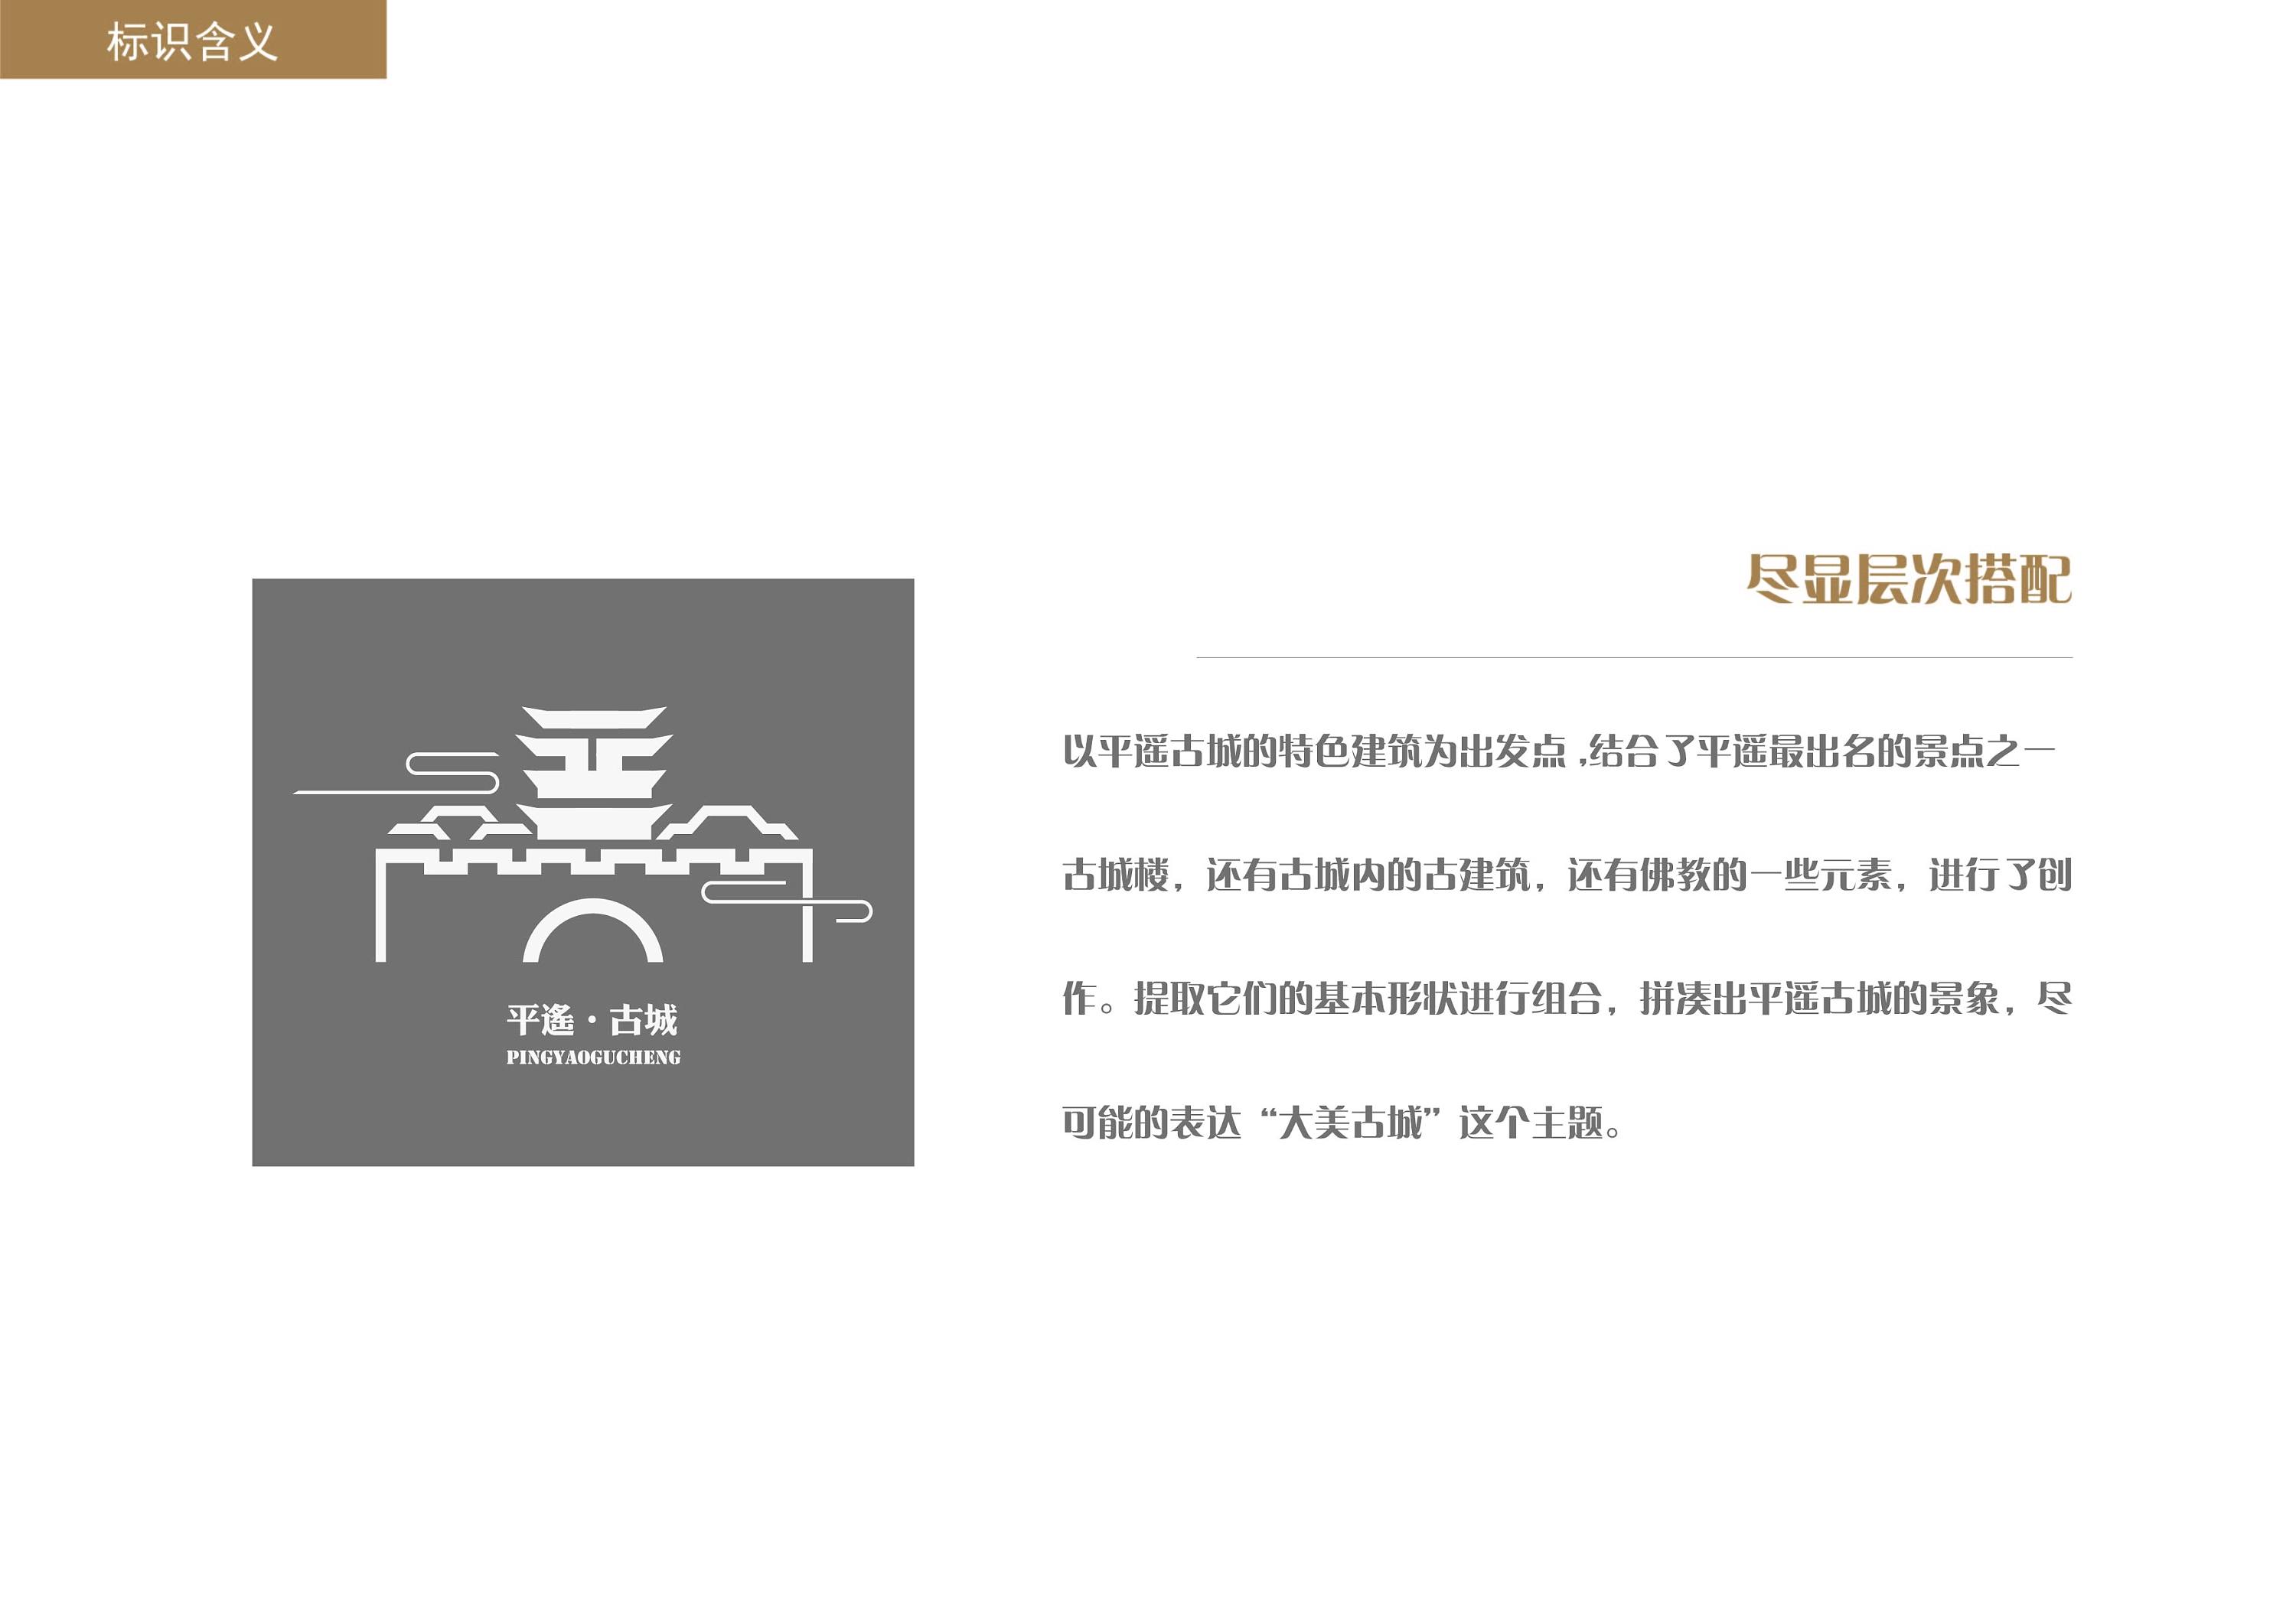 平遥古城logo设计理念图片